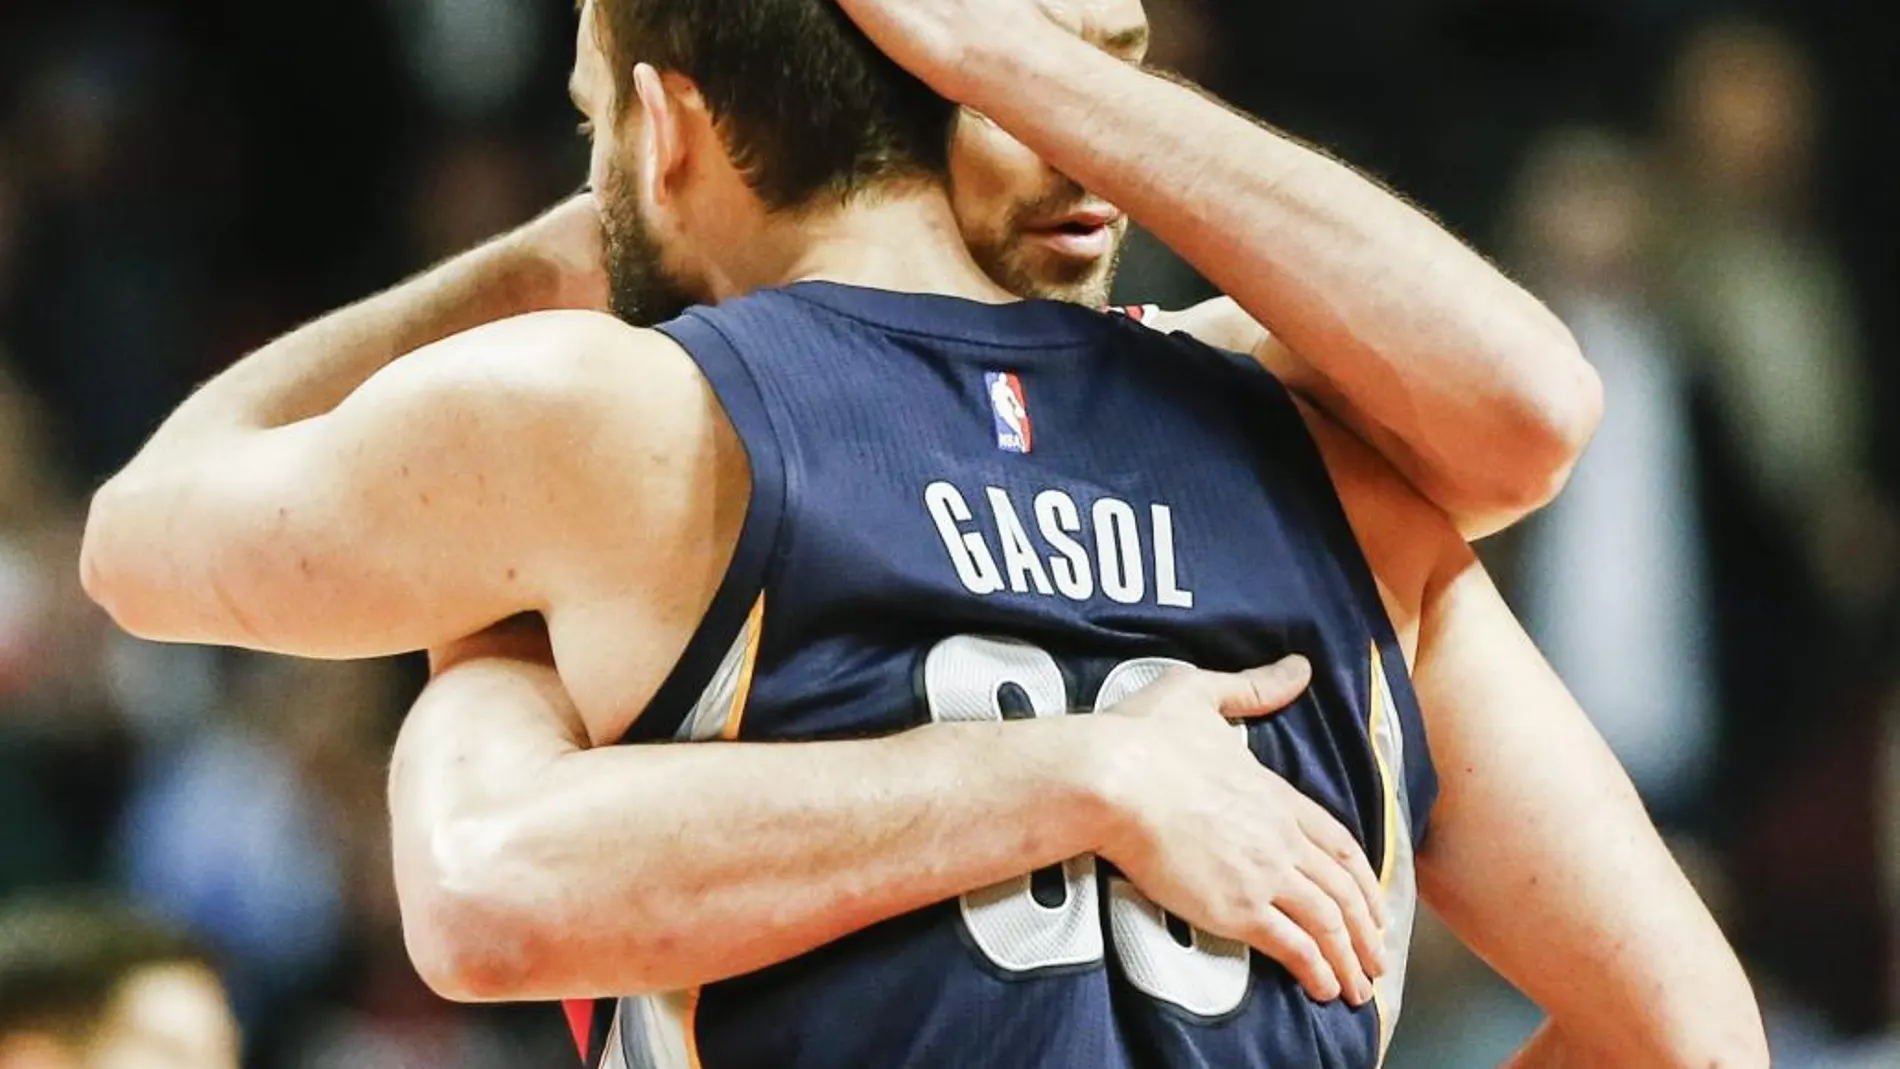 Marc Gasol (d) de Grizzlies abraza a su hermano Pau Gasol (i) de Bulls tras el partido de la NBA en el United Center de Chicago.